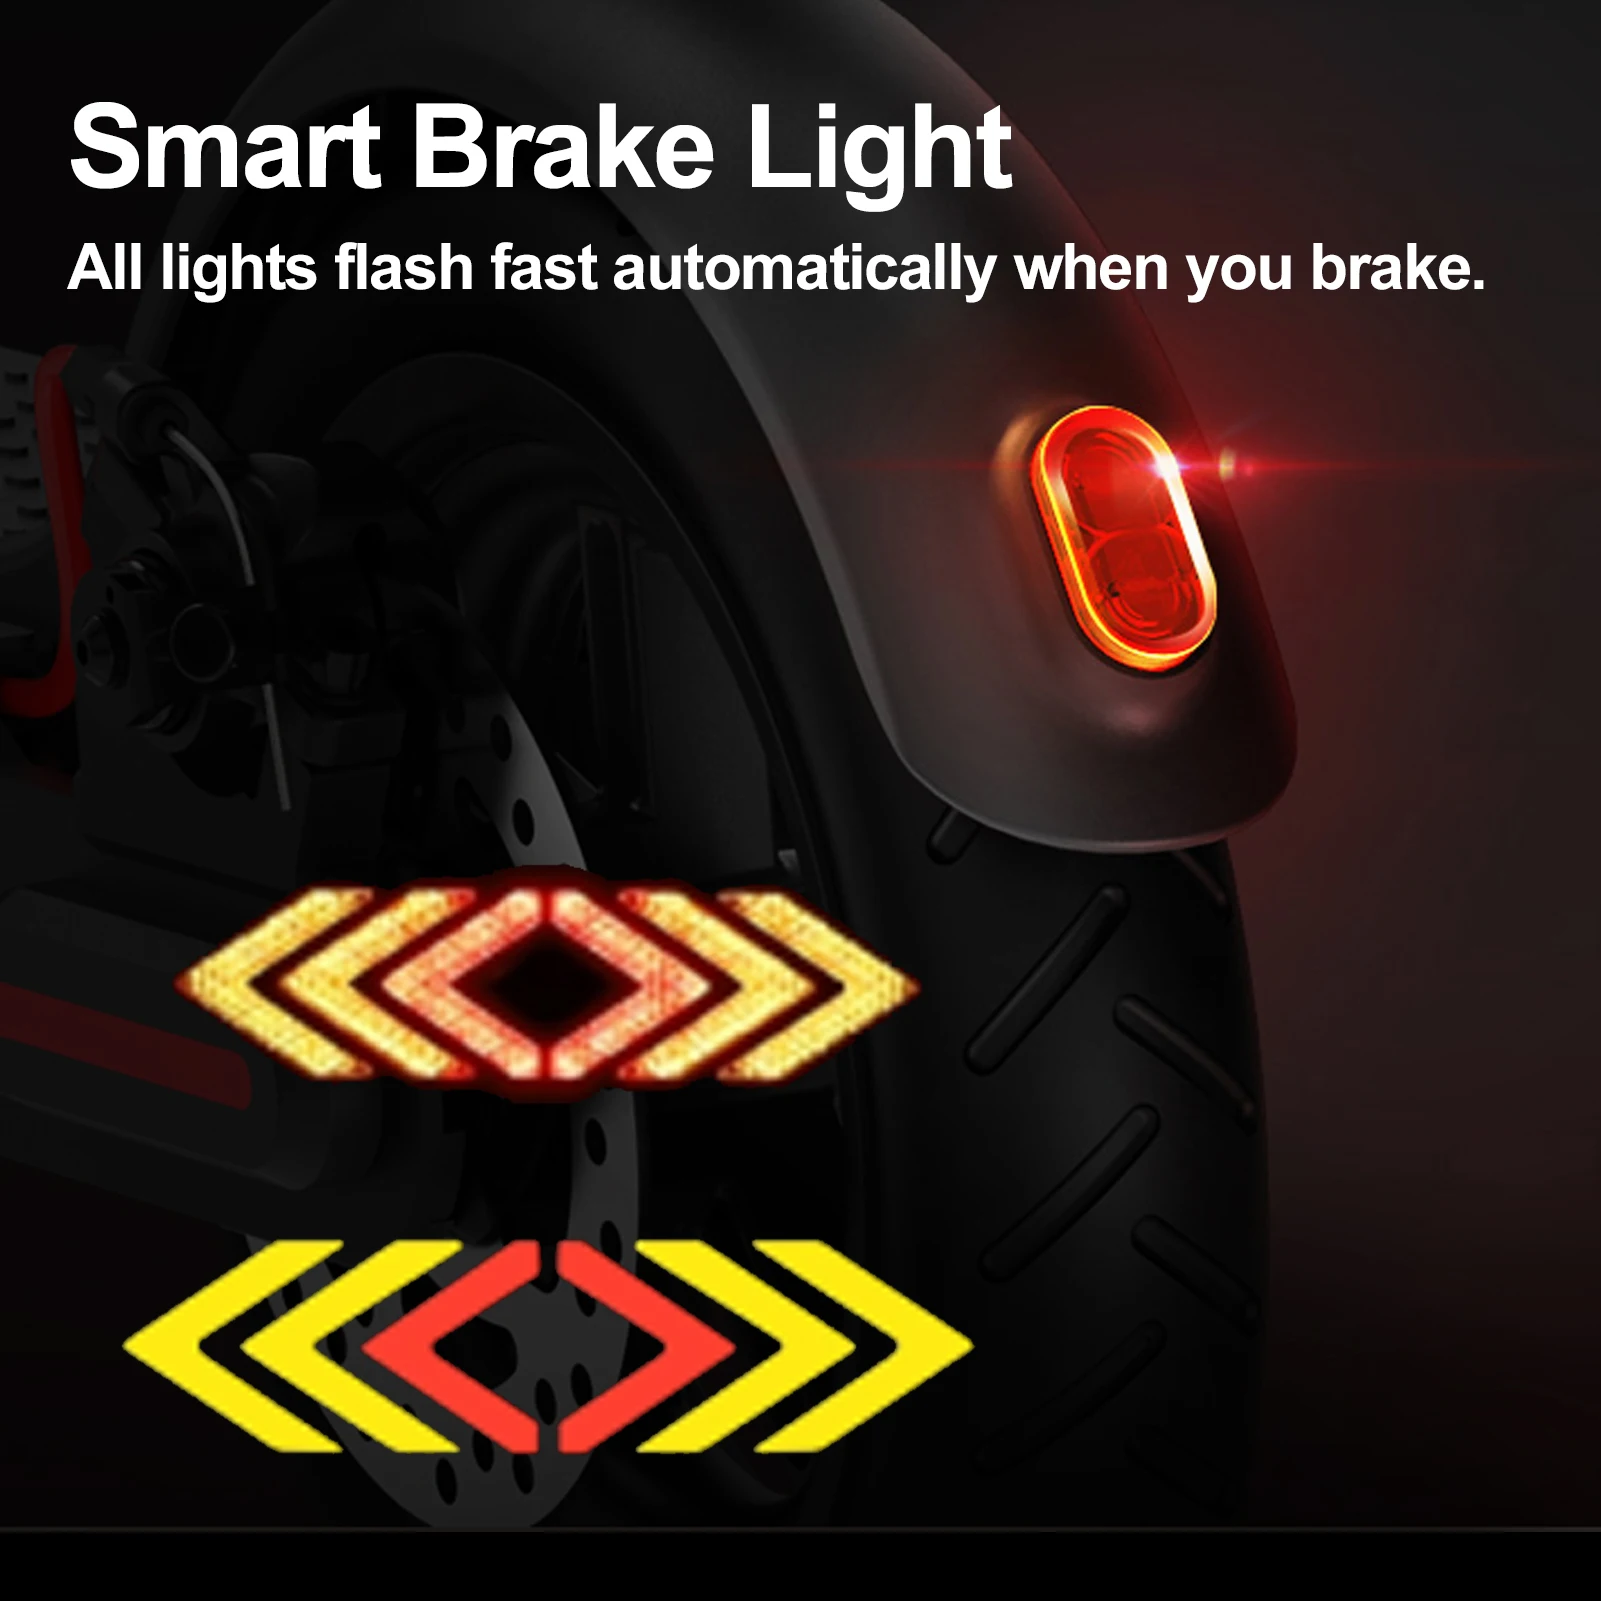 Задний фонарь электрического скутера с указателями поворота, Беспроводной пульт дистанционного управления, предупреждающий о безопасности, задний фонарь для электронных скутеров Xiaomi 2